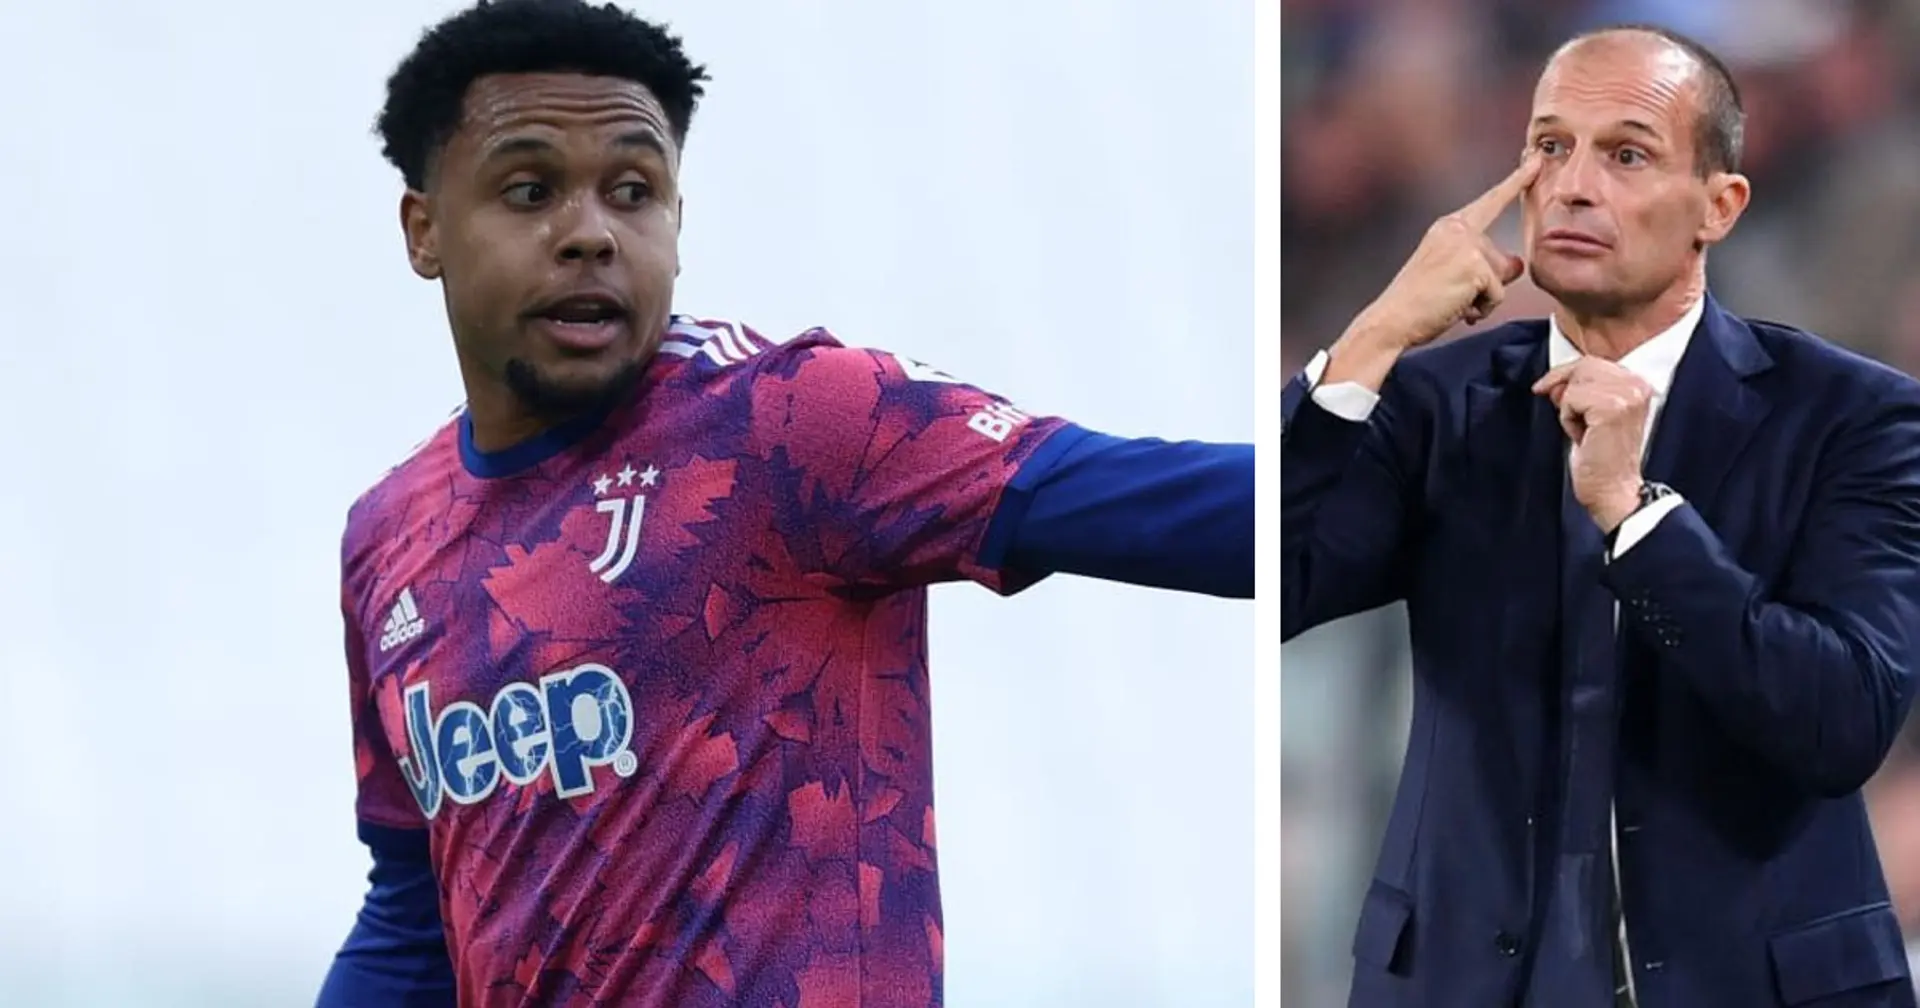 La Juventus è pronta a venderlo ma Allegri punta ancora su di lui: l'allenatore della Juve reinventa McKennie a Cremona